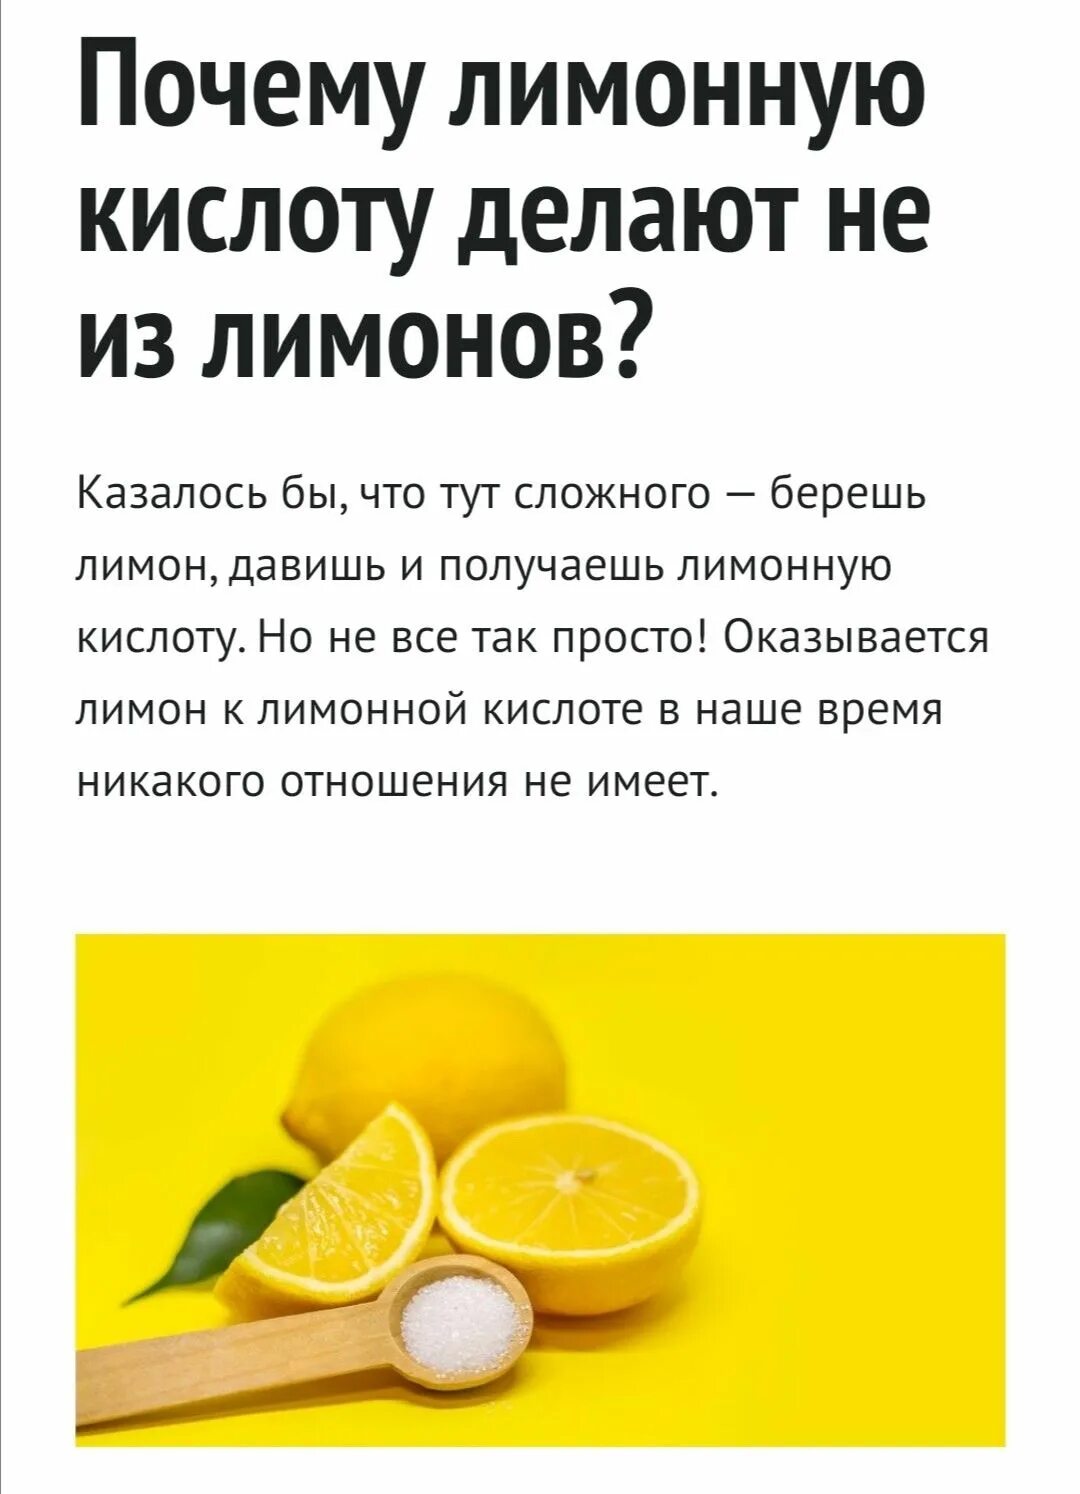 Добавляю в чай лимонную кислоту. Как делают лимонную ктслот. Лимонная кислота. Как делают лимонную кислоту. Лимонная кислота сок.